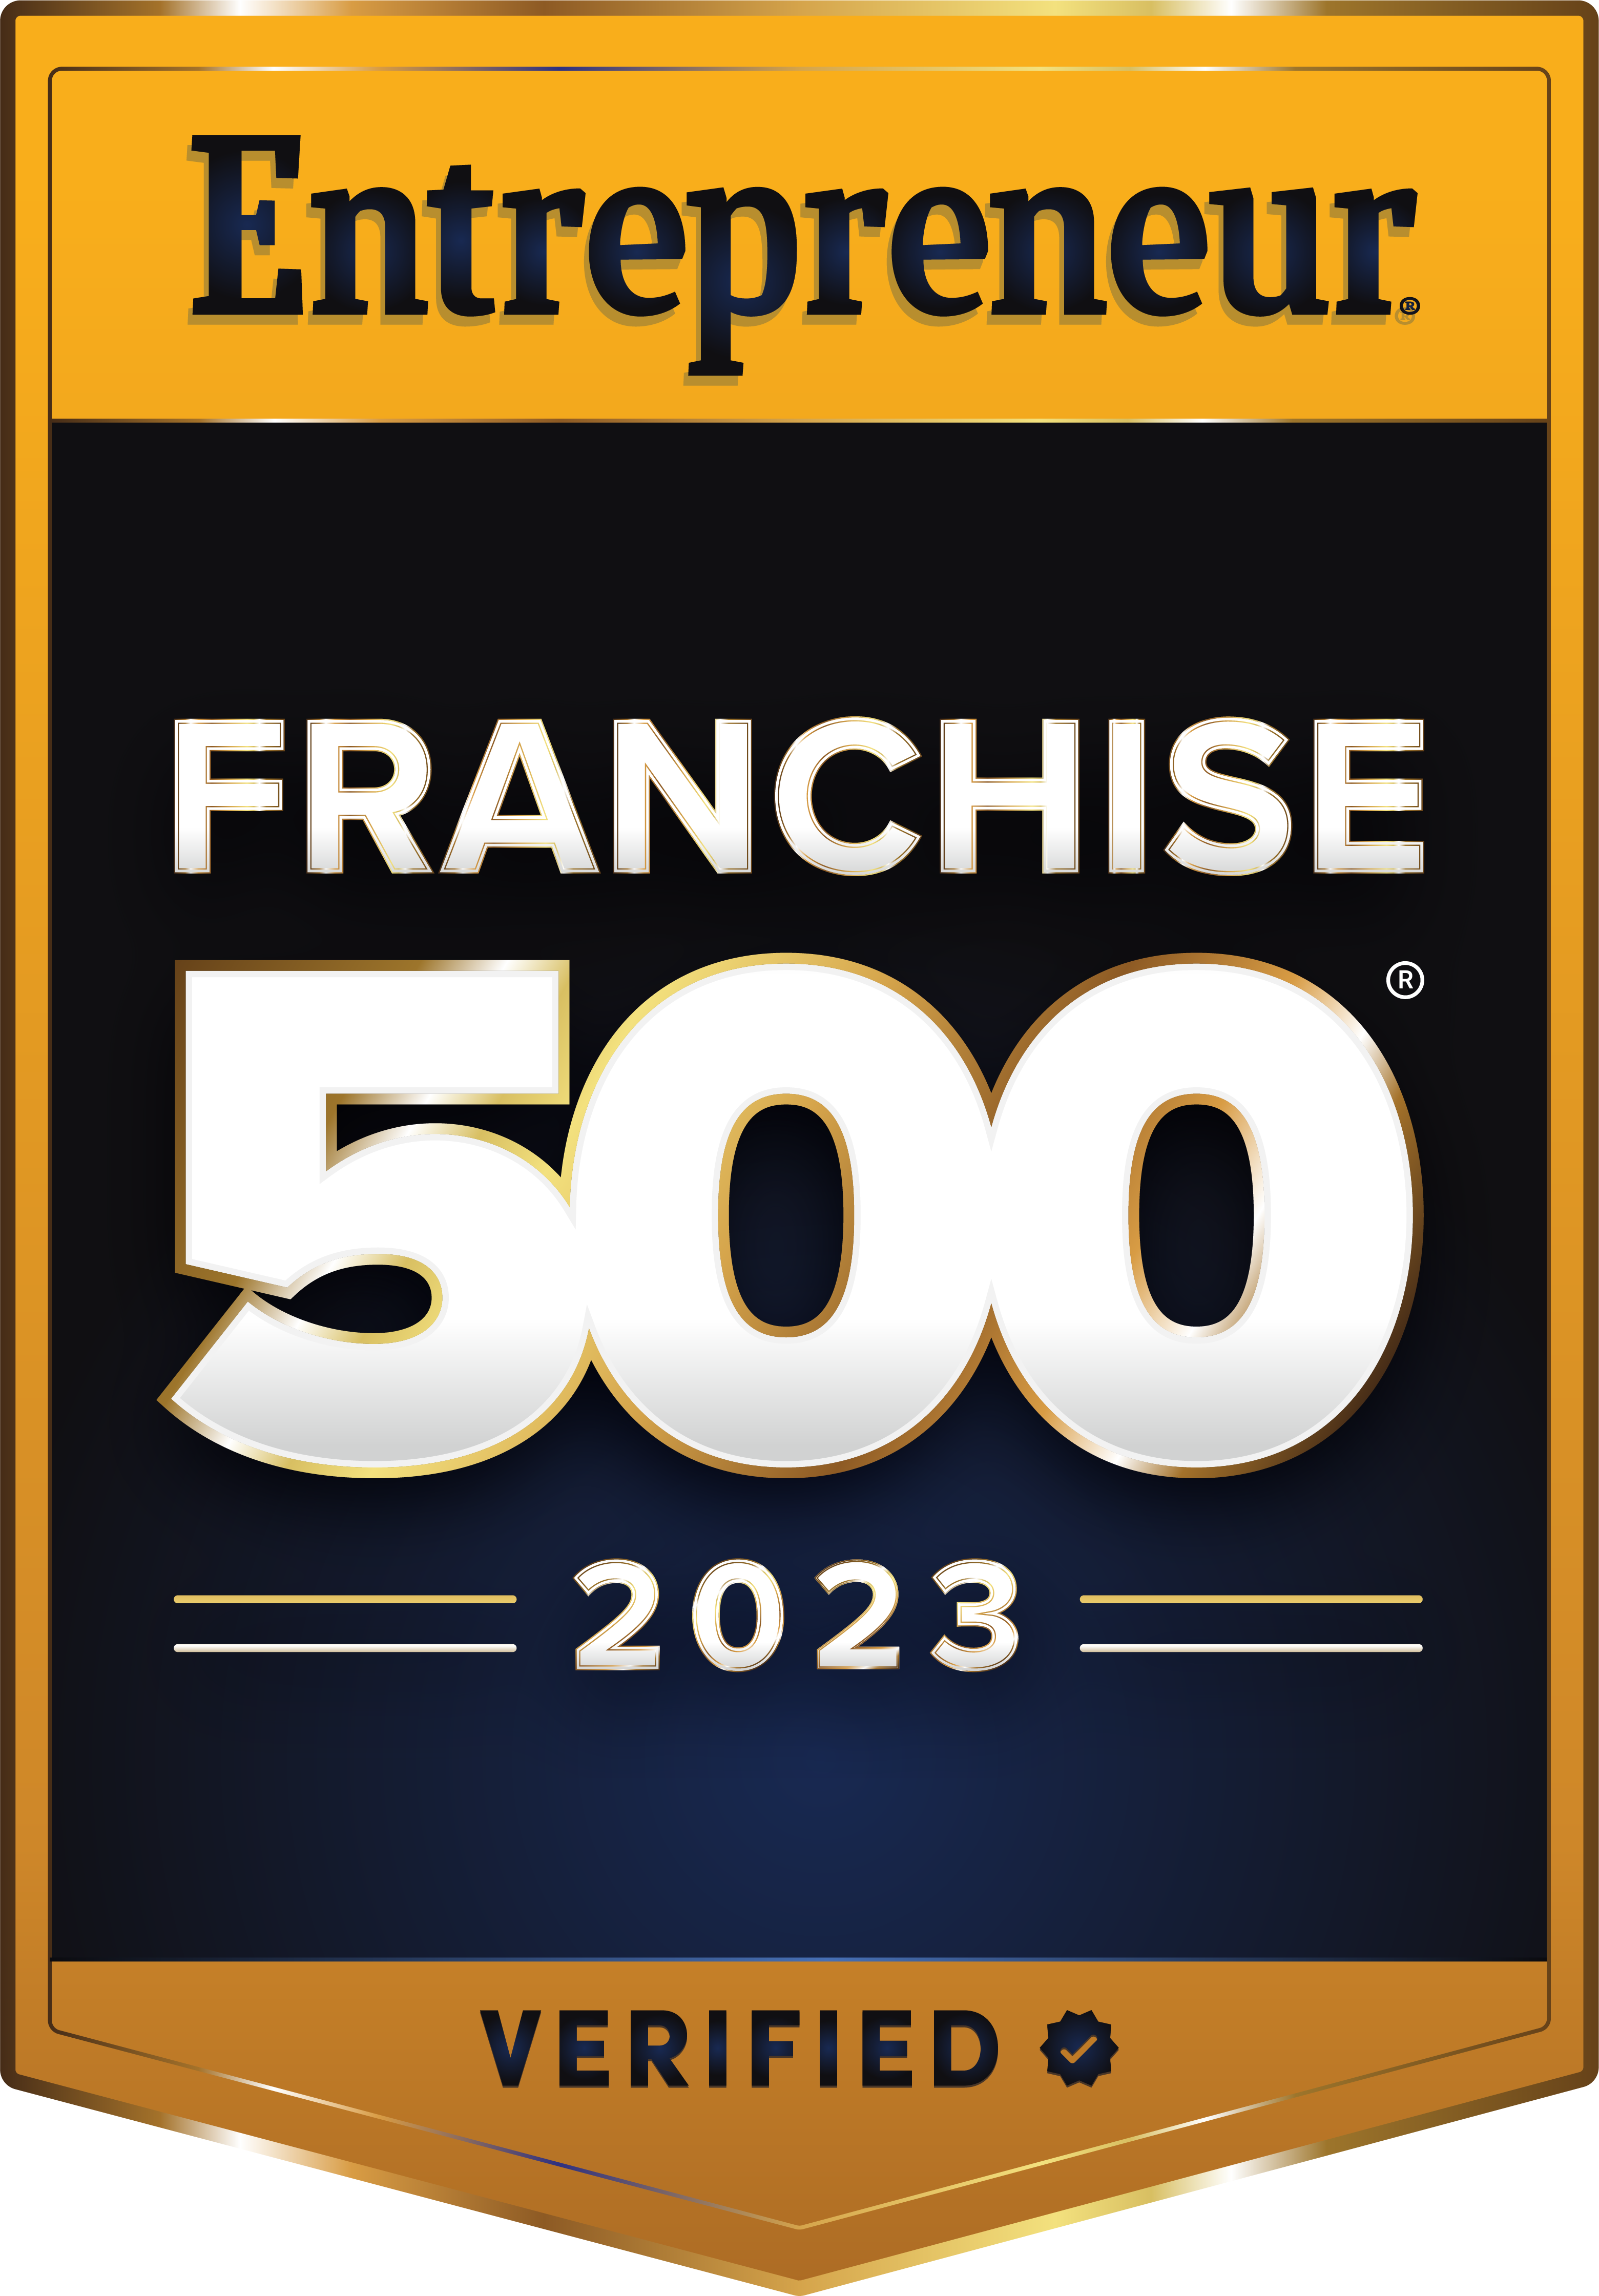 Entreprenuer 500 Logo